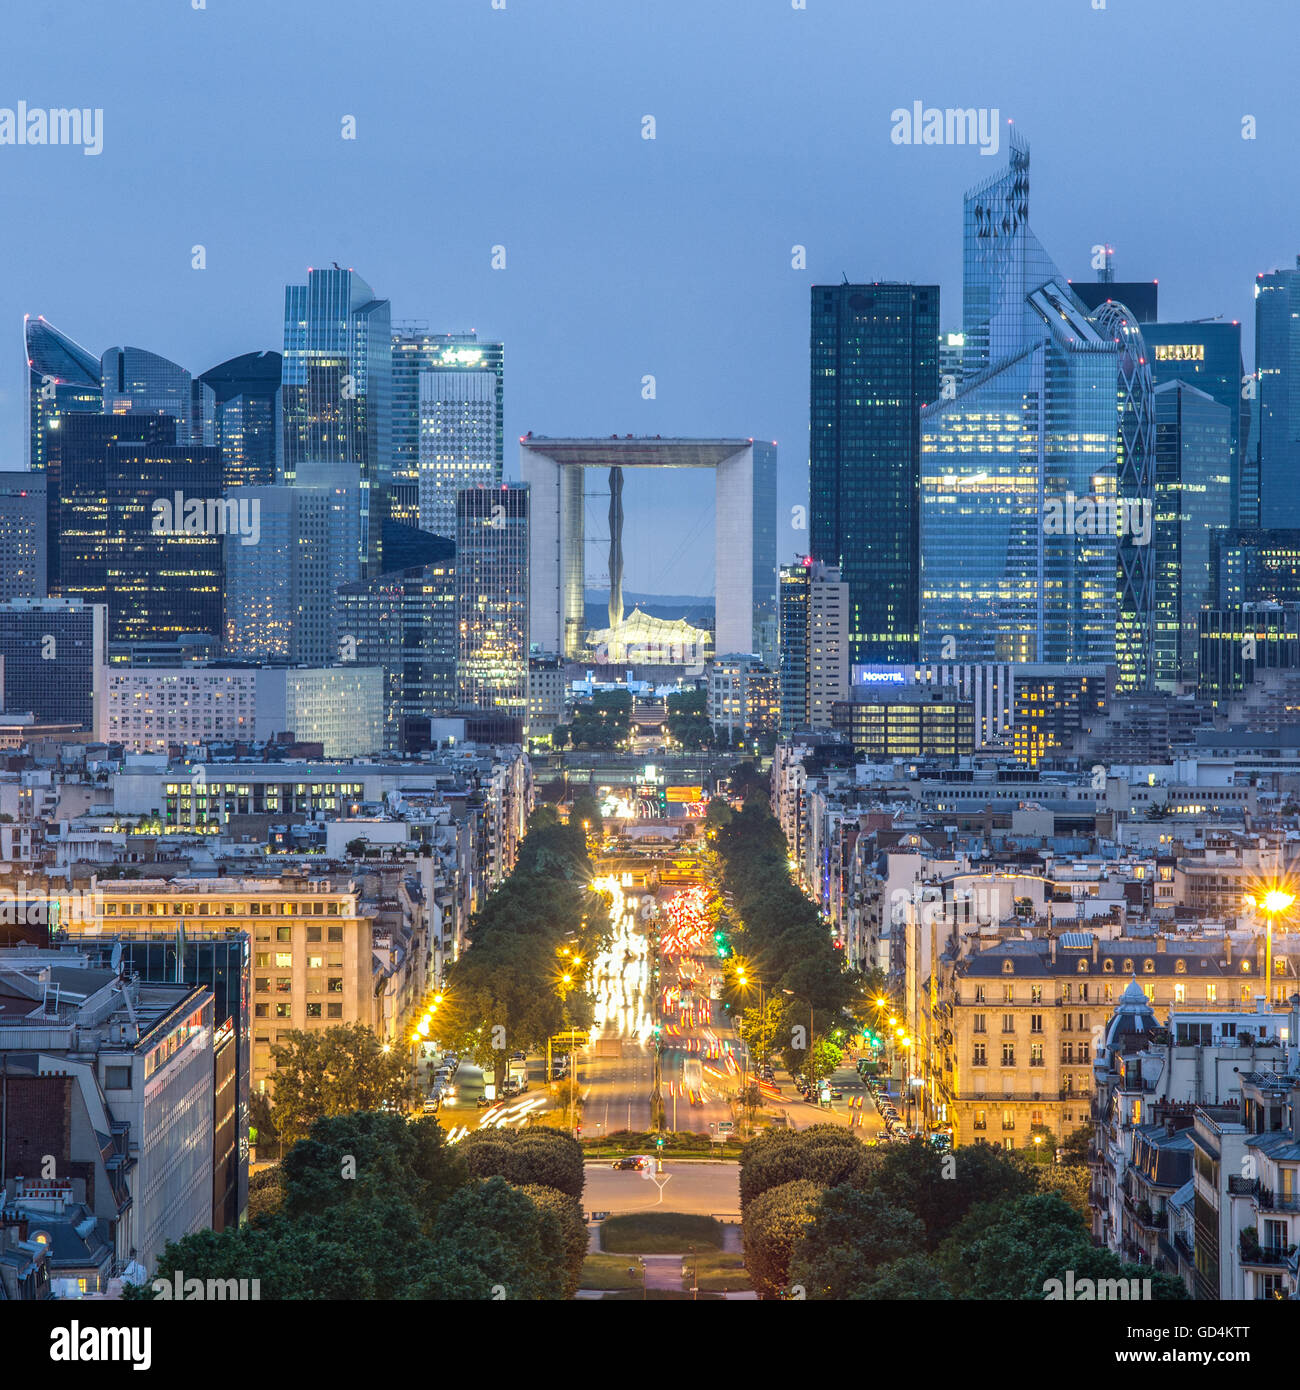 La Defence, Paris business district at dusk. Stock Photo